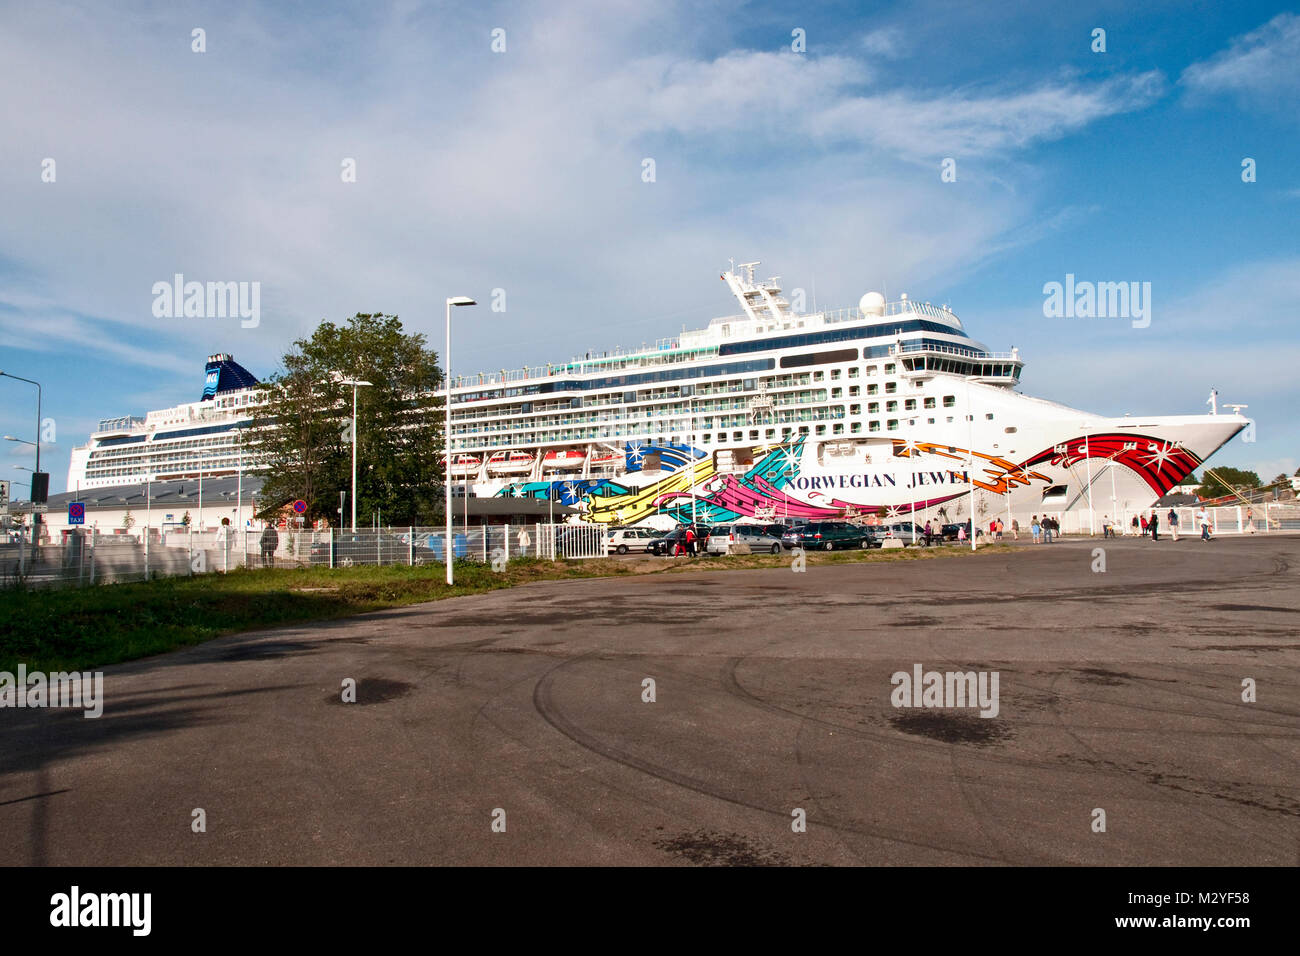 Die Norwegian Jewel ist ein bei der Meyer Werft GmbH in Papenburg, (Deutschland) gebautes Kreuzfahrtschiff der Panamax-Klasse und hat in Warnemünde an Pier 7 angelegt. Stock Photo